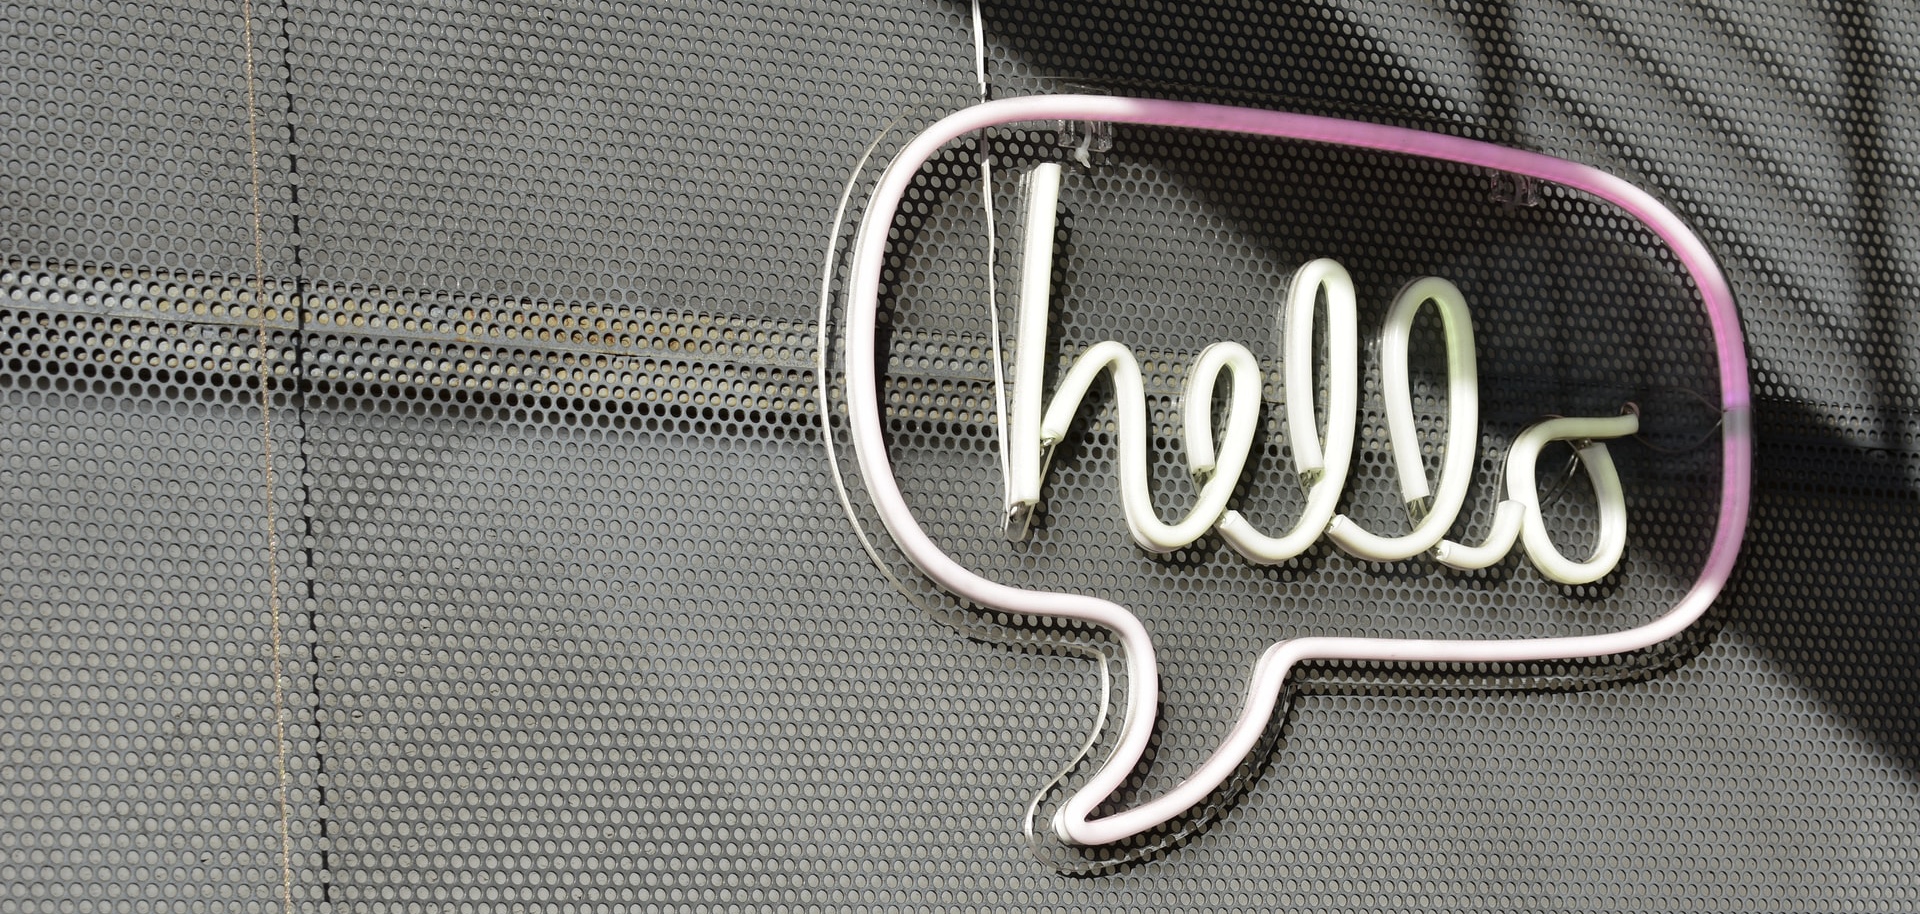 Neonfarbene Sprechblase mit Schriftzug "hello"